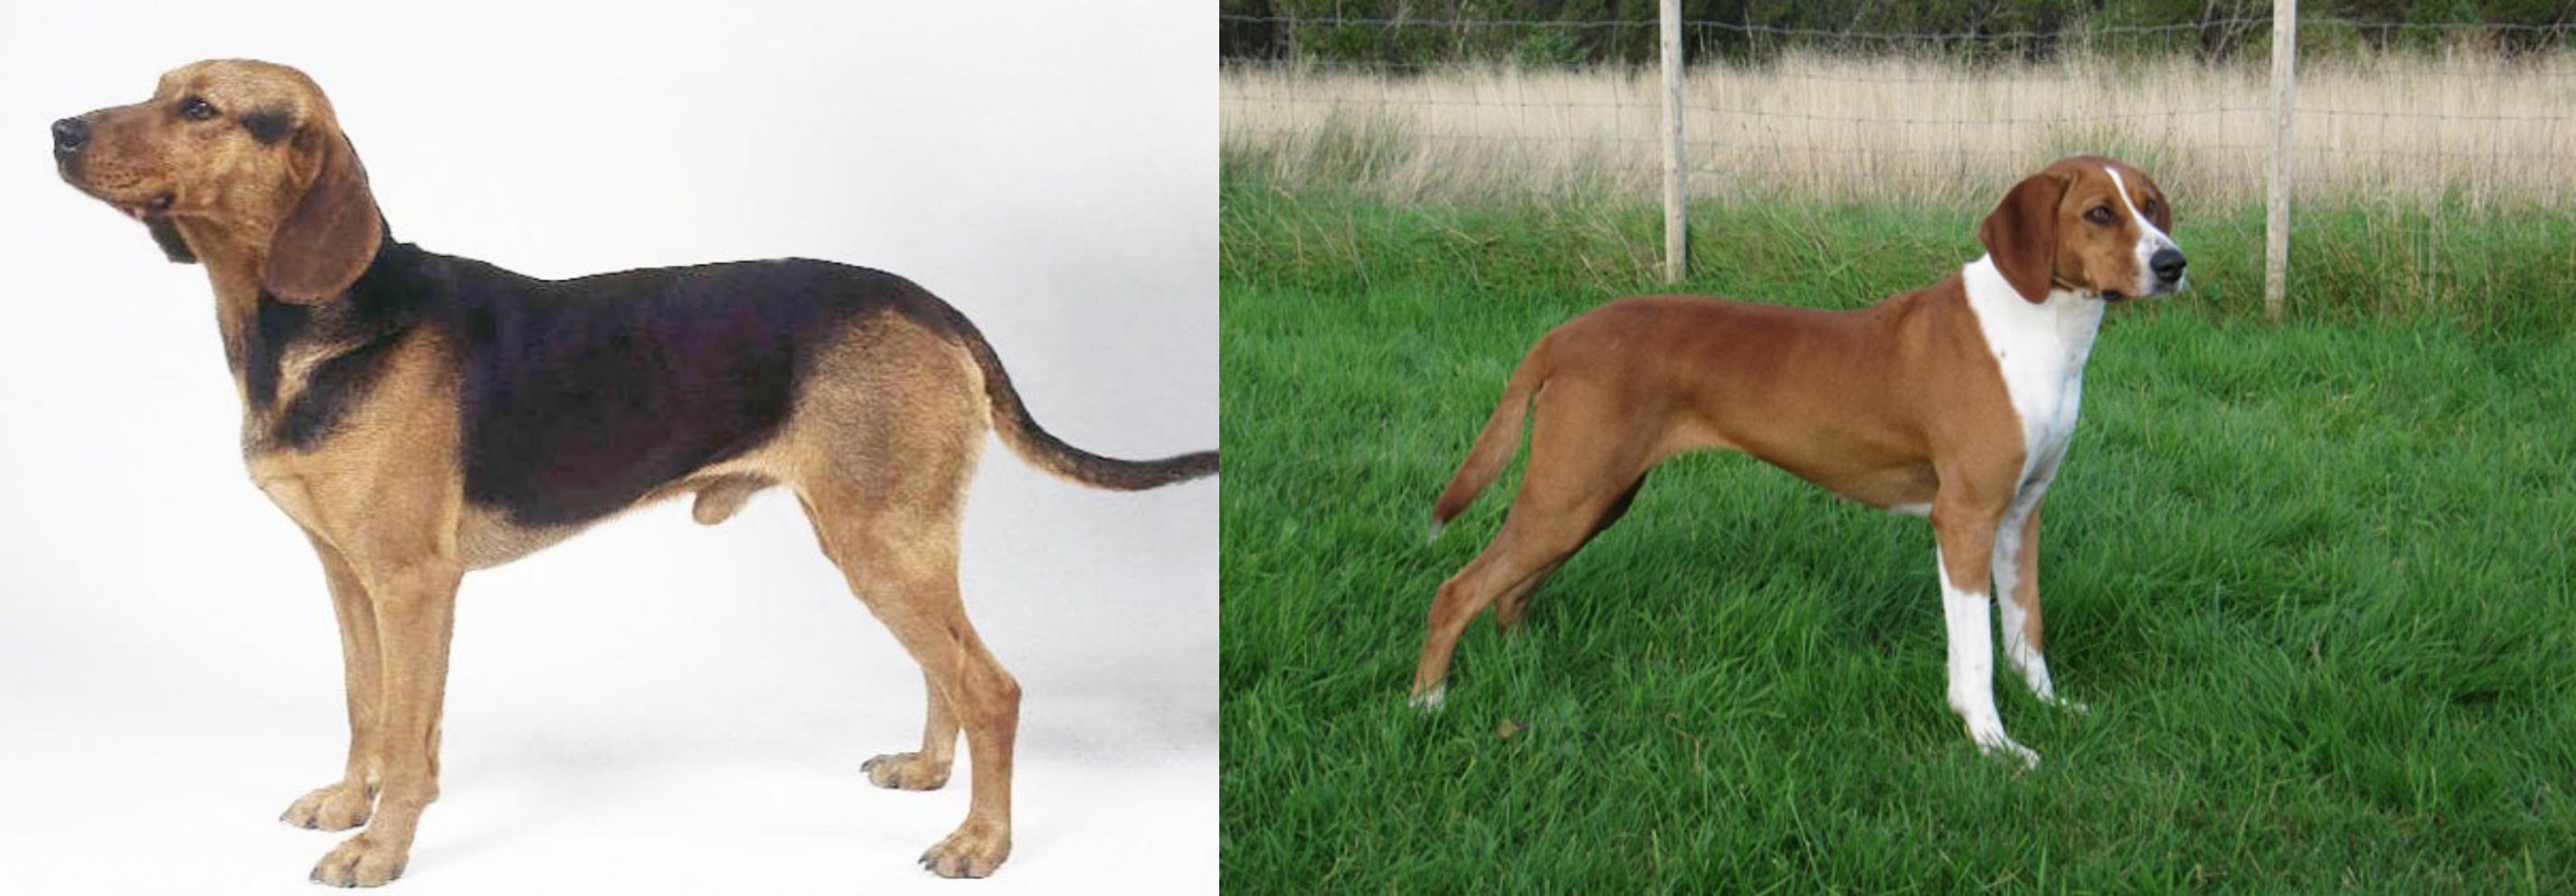 Serbian Hound Vs Hygenhund Breed Comparison Mydogbreeds